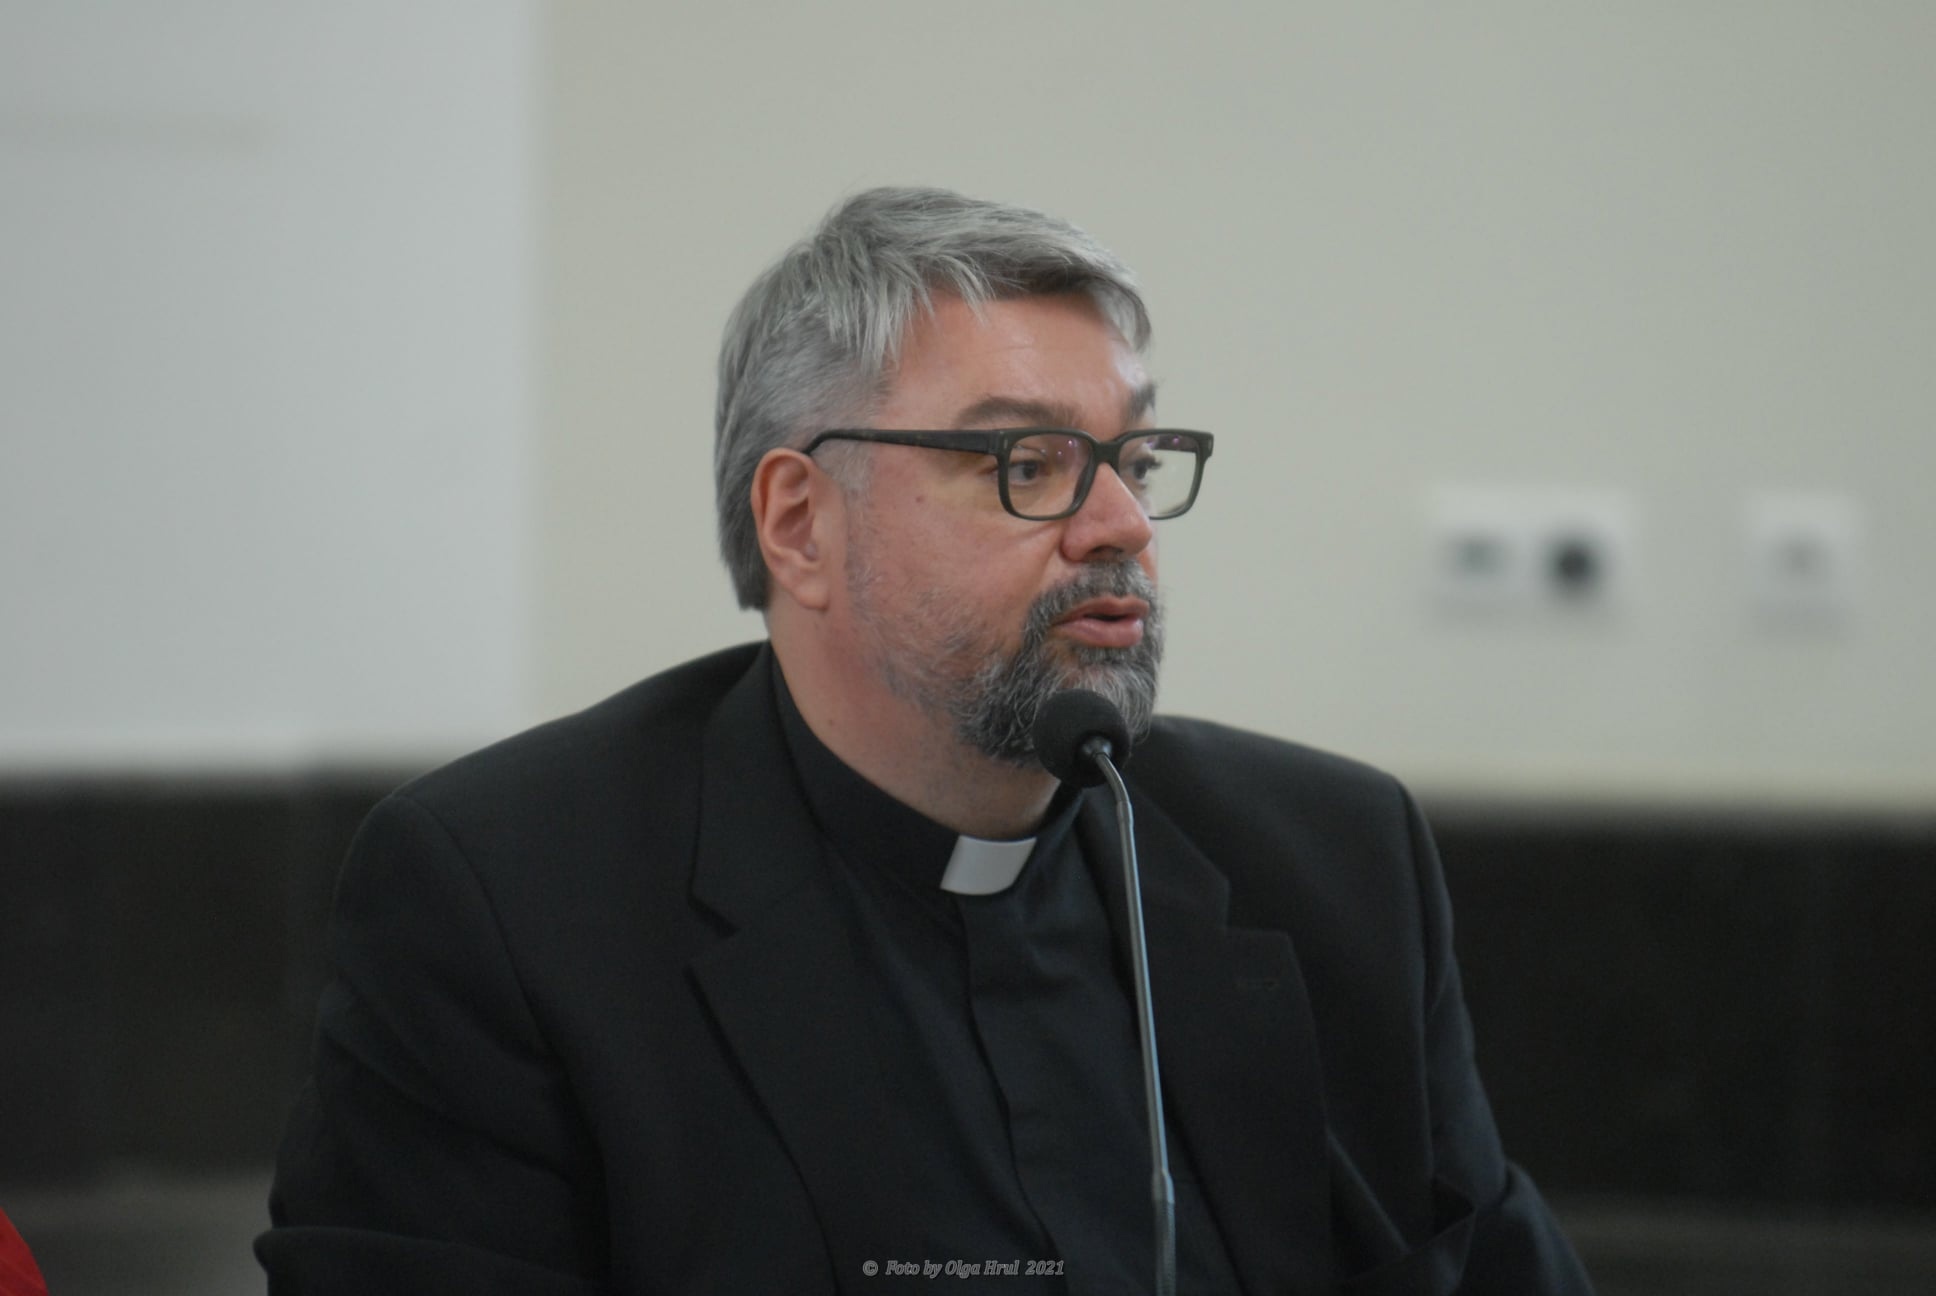 Священник Кирилл Горбунов: «Главное проявление синодальности – сама возможность говорить внутри Церкви»